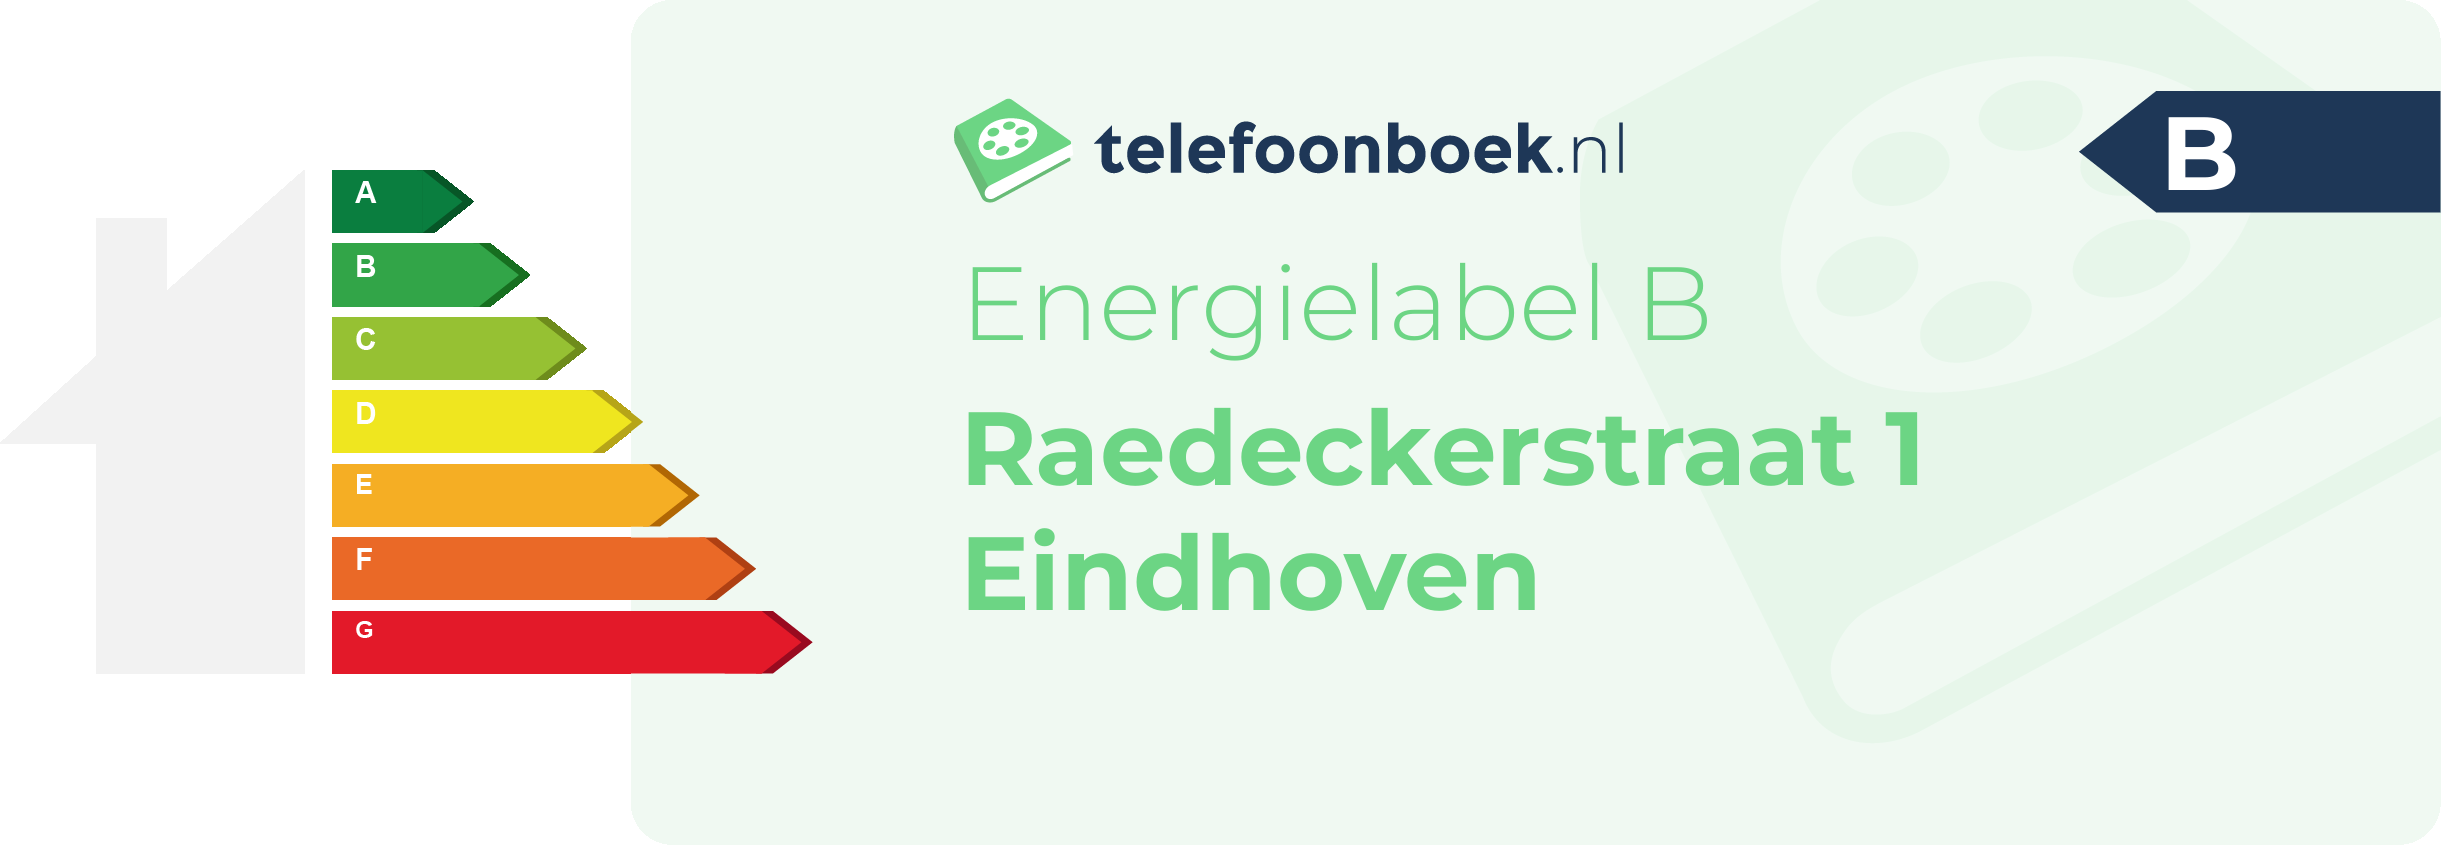 Energielabel Raedeckerstraat 1 Eindhoven